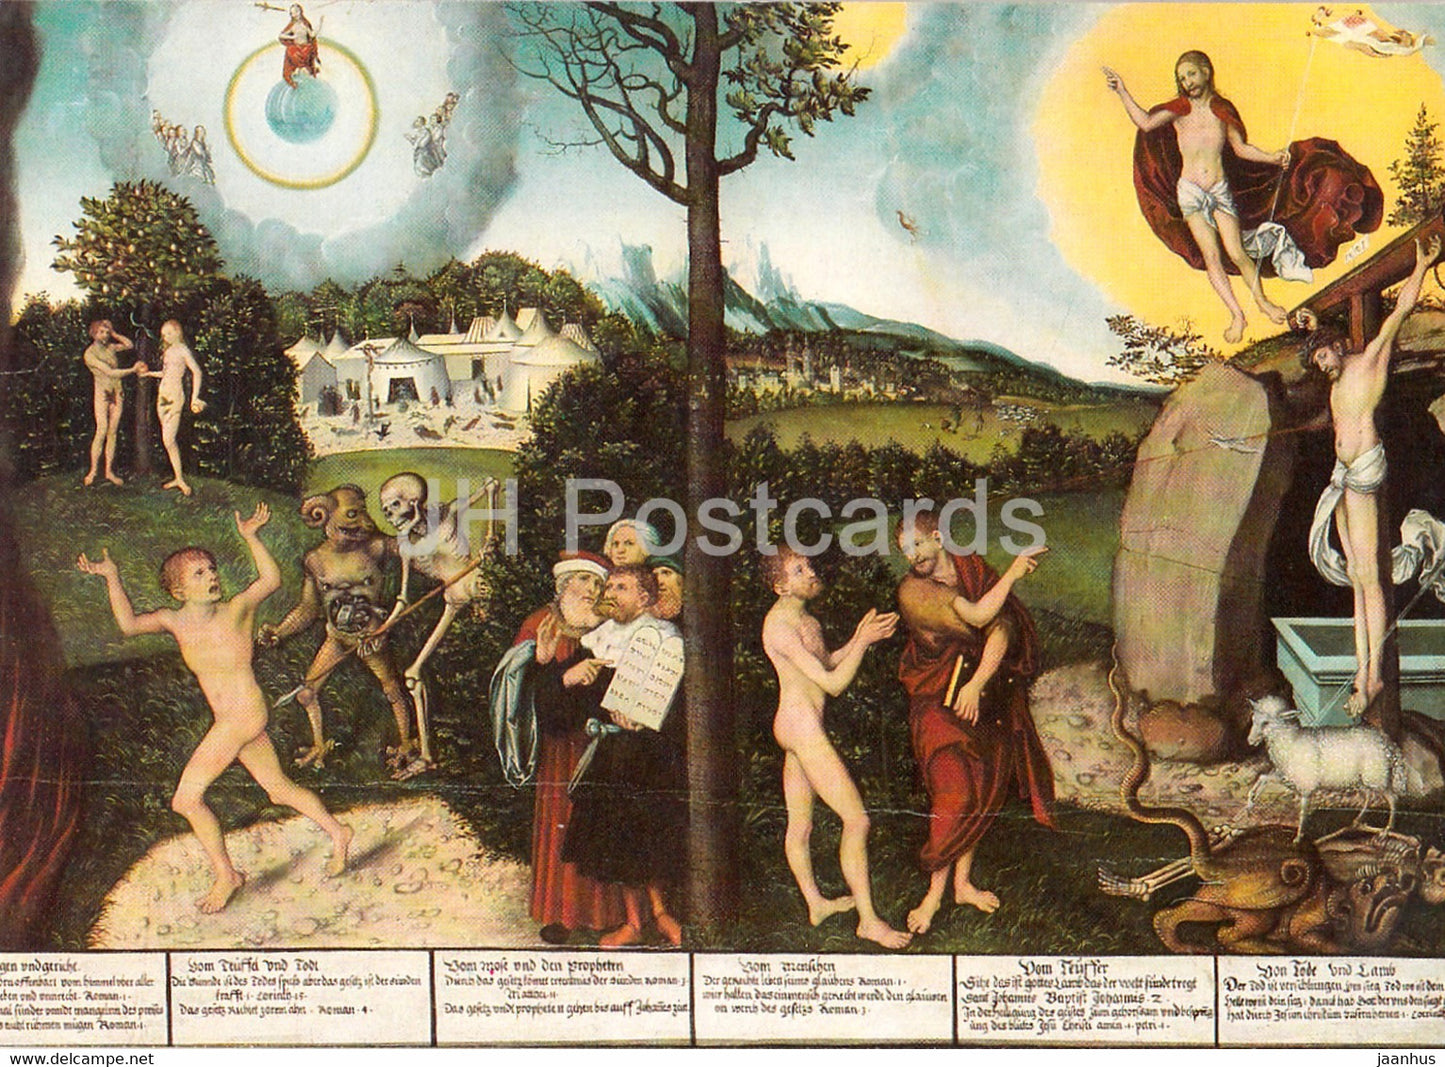 painting by Lucas Cranach the Elder - Rechtfertigung - Justification - German art - Germany - unused - JH Postcards